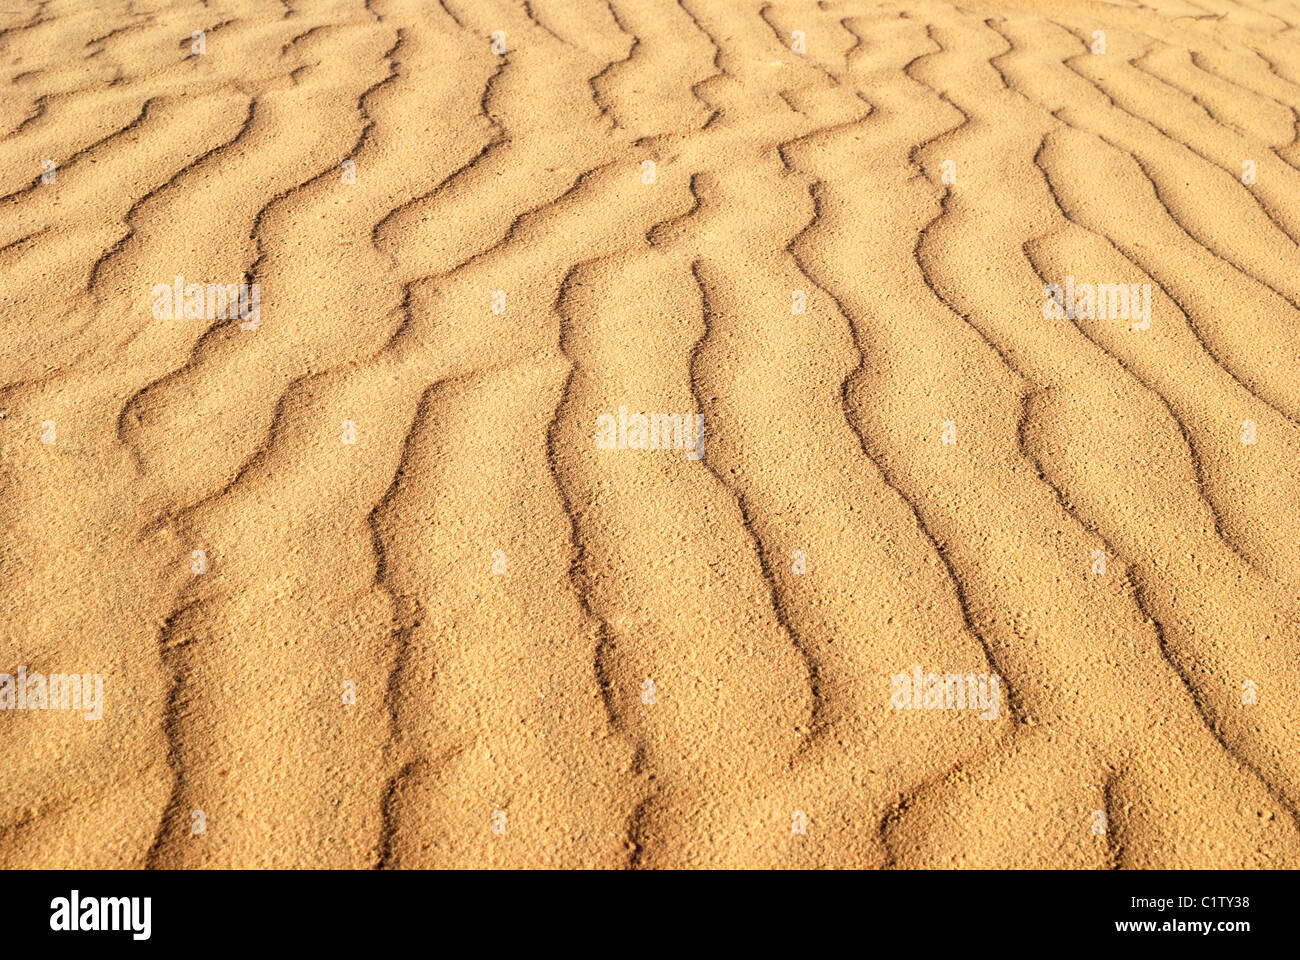 Les ondulations en forme de sable, peut utiliser pour l'arrière plan. Désert Néguev, Israël. Banque D'Images